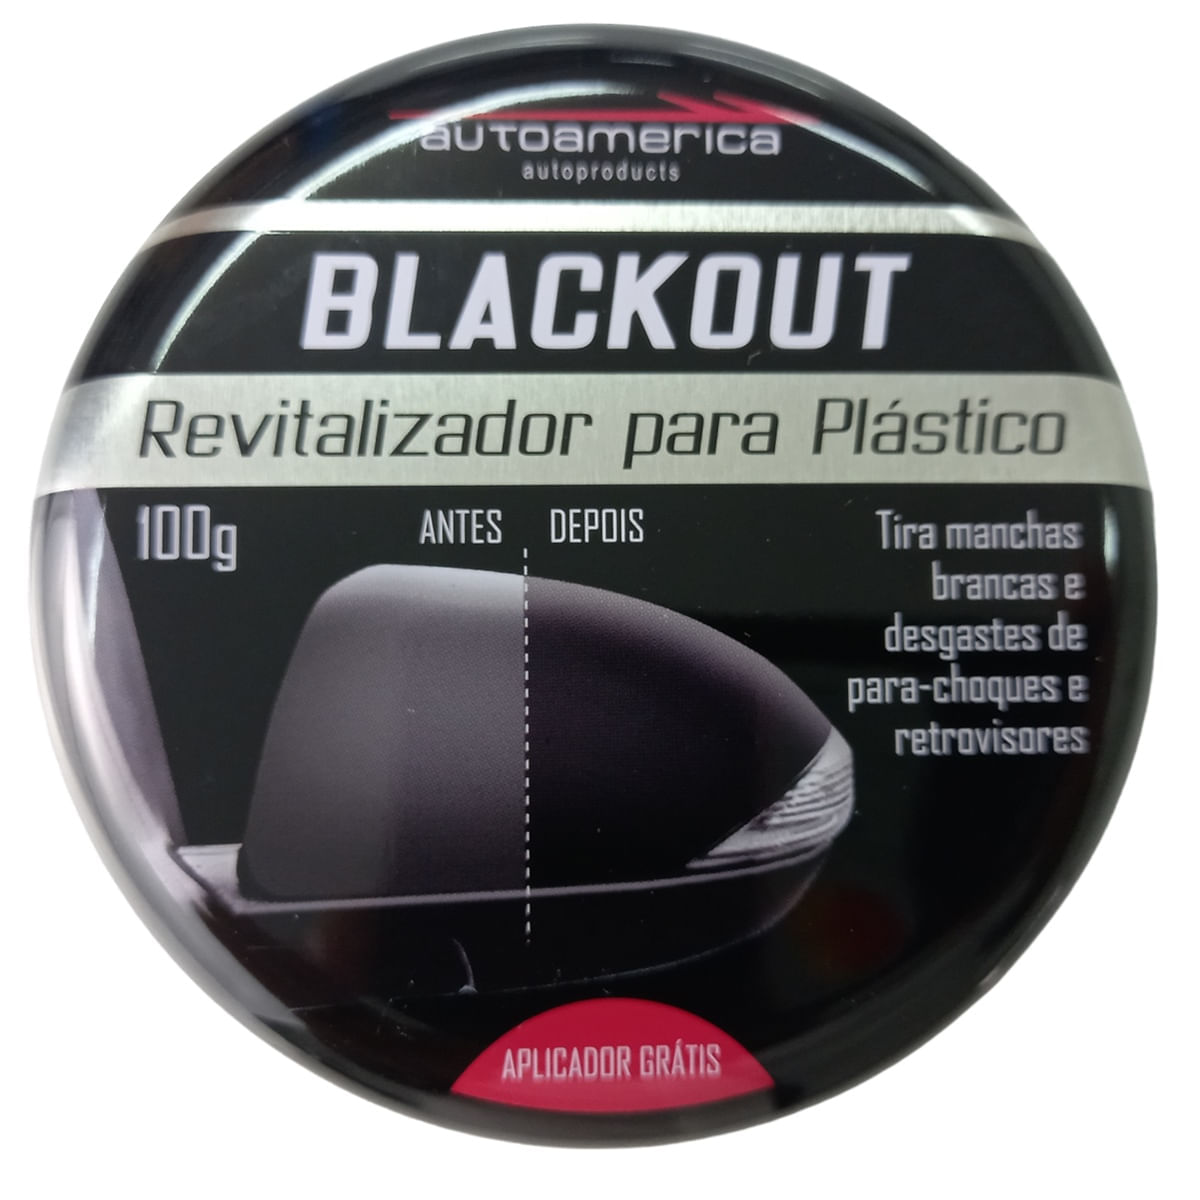 Revitalizador De Parachoques Blackout 100G